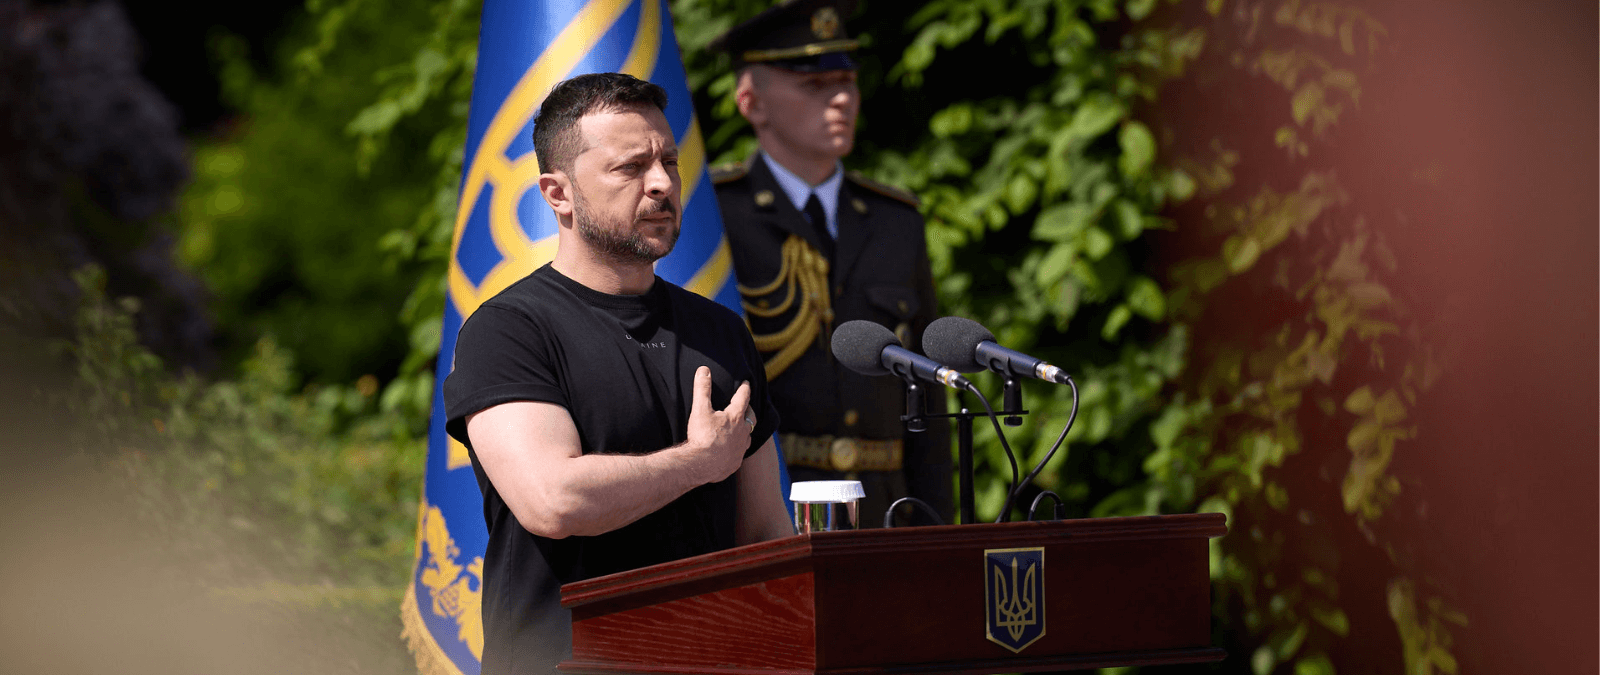 La ley marcial declarada en Ucrania desde el inicio de la invasión rusa anula la convocatoria de elecciones